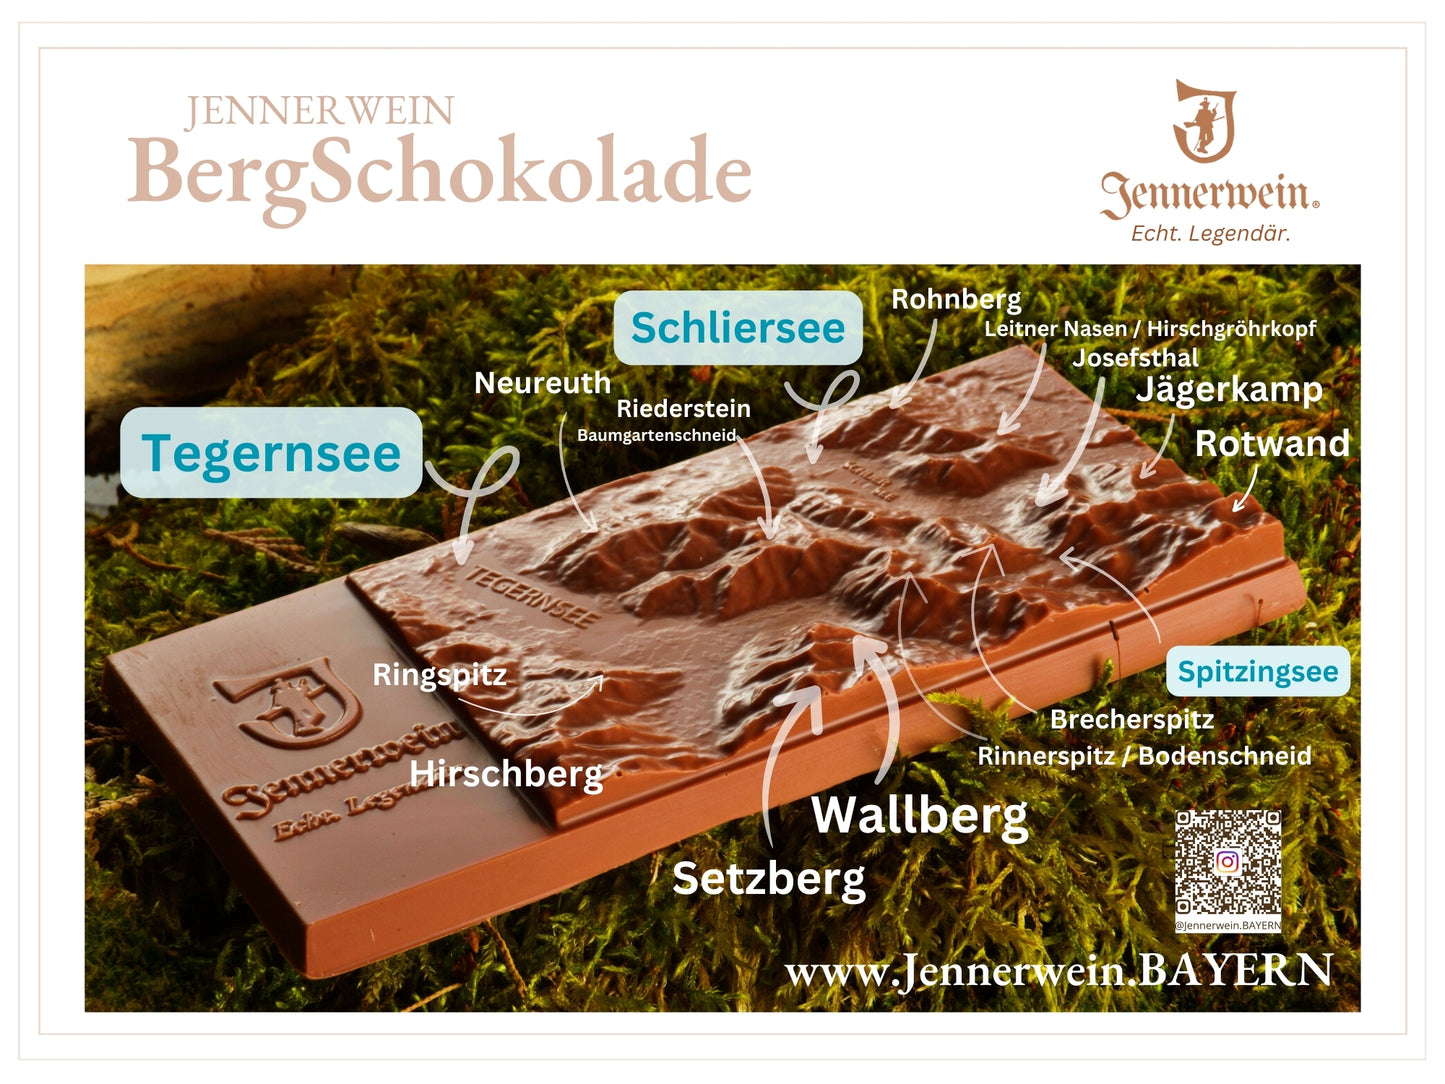 Die besondere Schokolade Alpenregion Tegernsee Schliersee Spitzingsee als Berglief